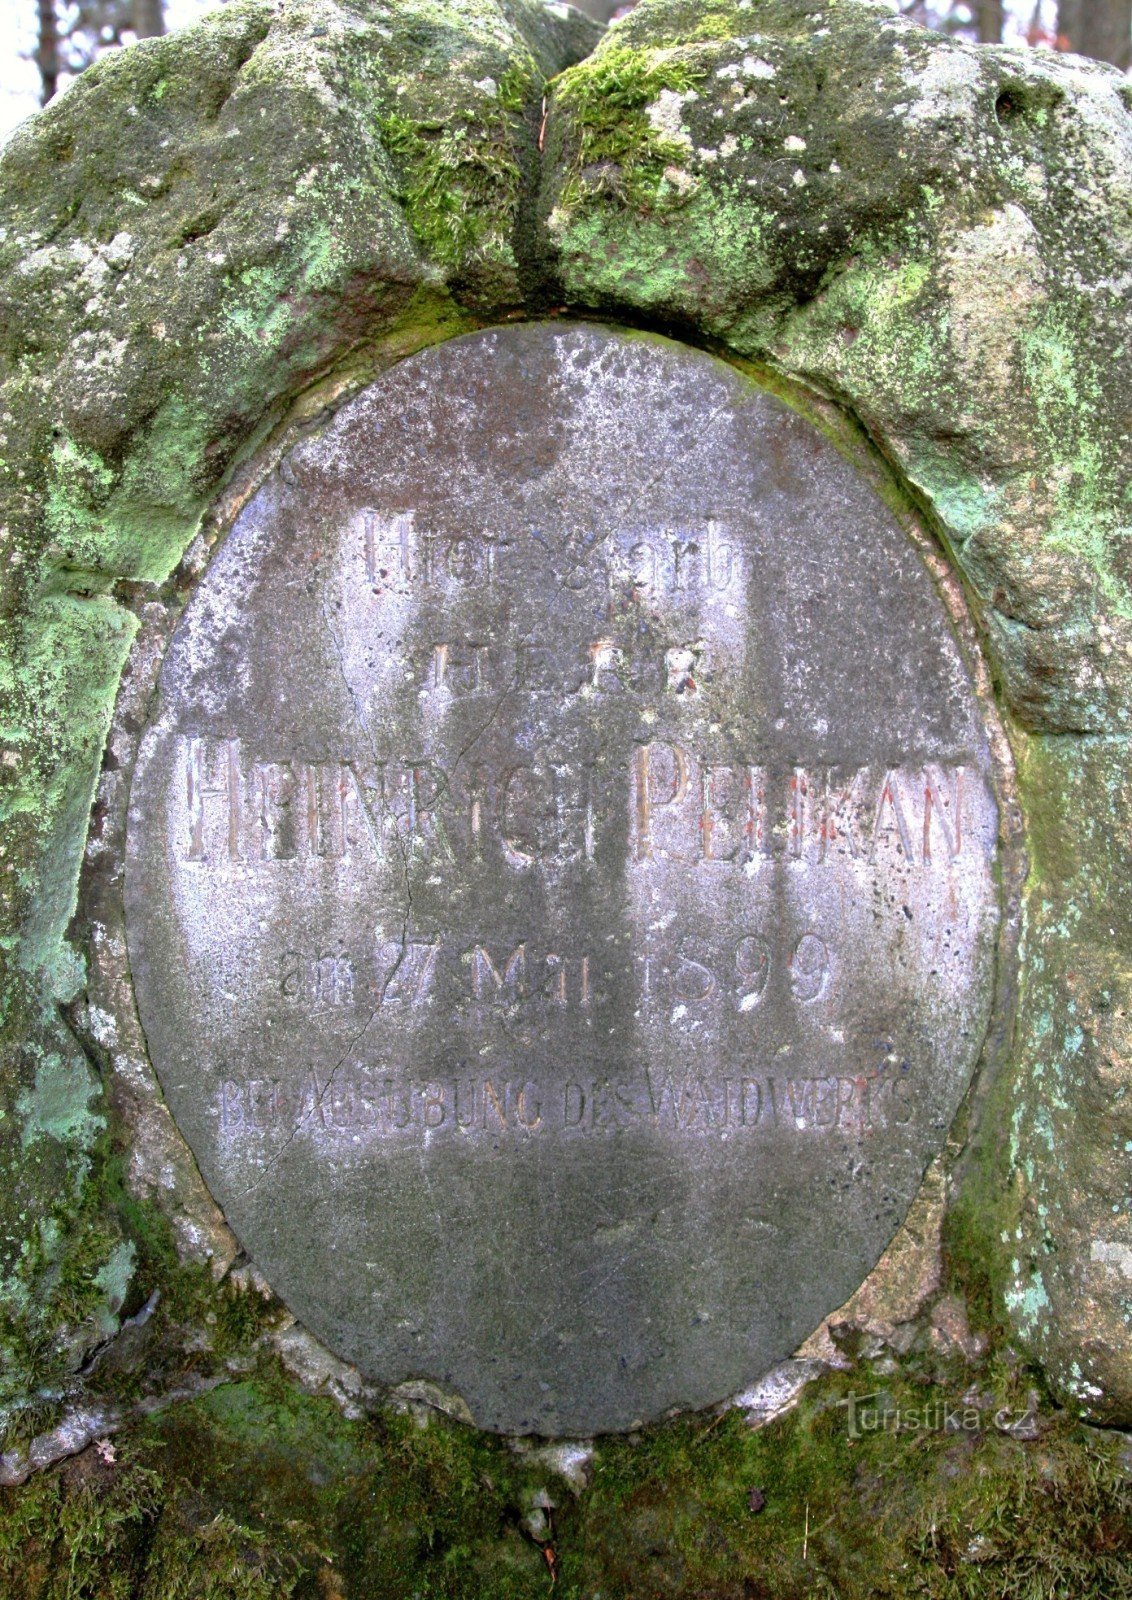 Detalje af inskriptionen på monumentet